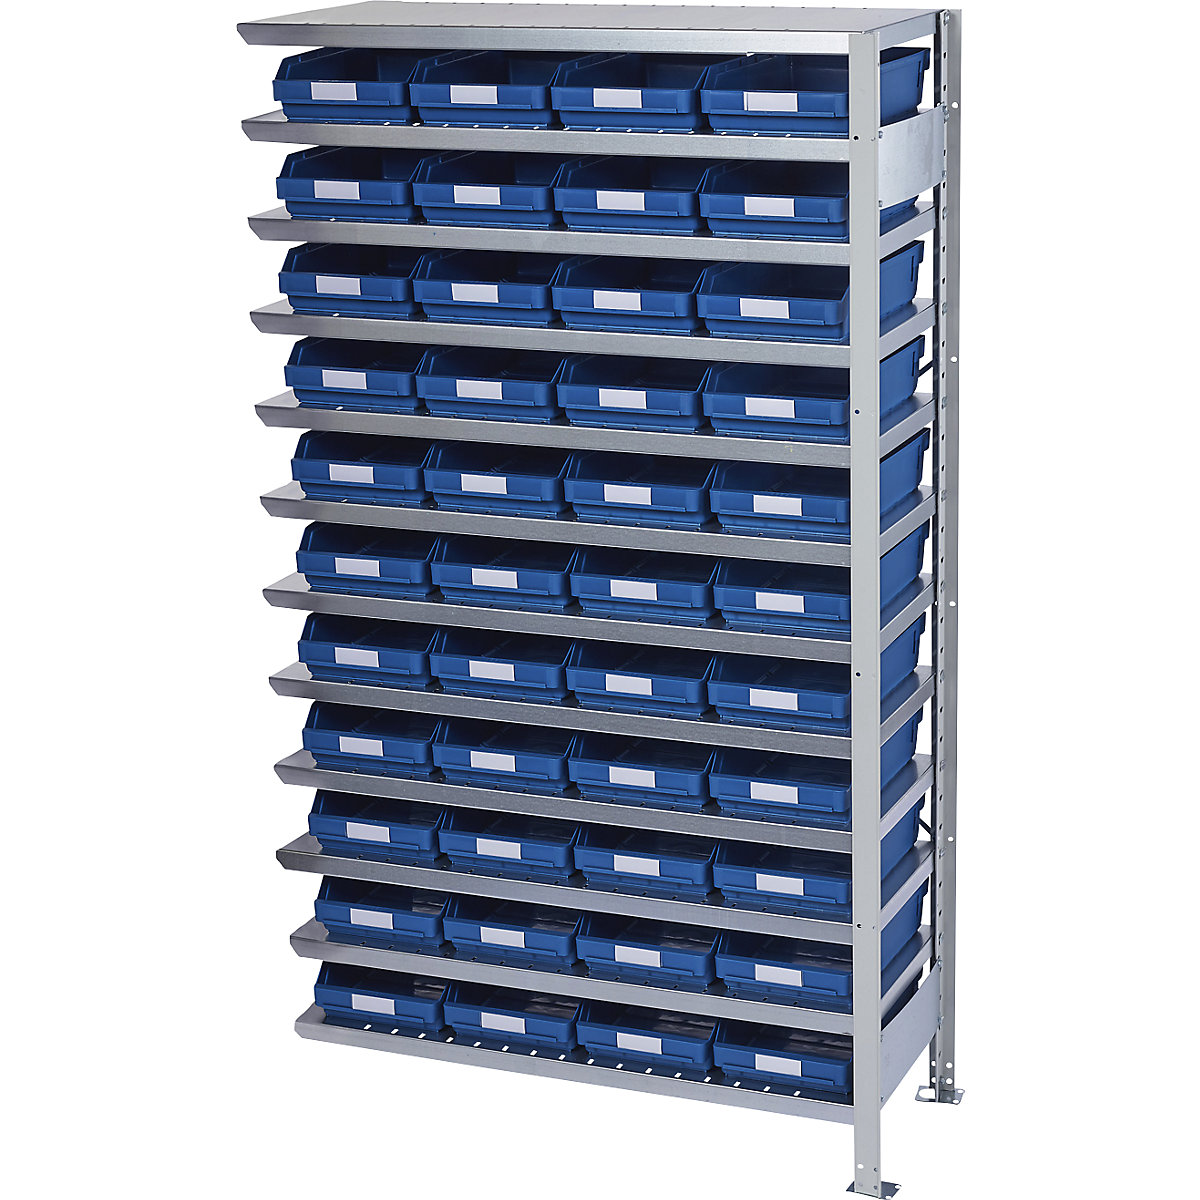 Összedugaszolós állvány dobozokkal – STEMO, állványmagasság 1790 mm, bővítő állvány, 500 mm mély, 44 kék doboz-31